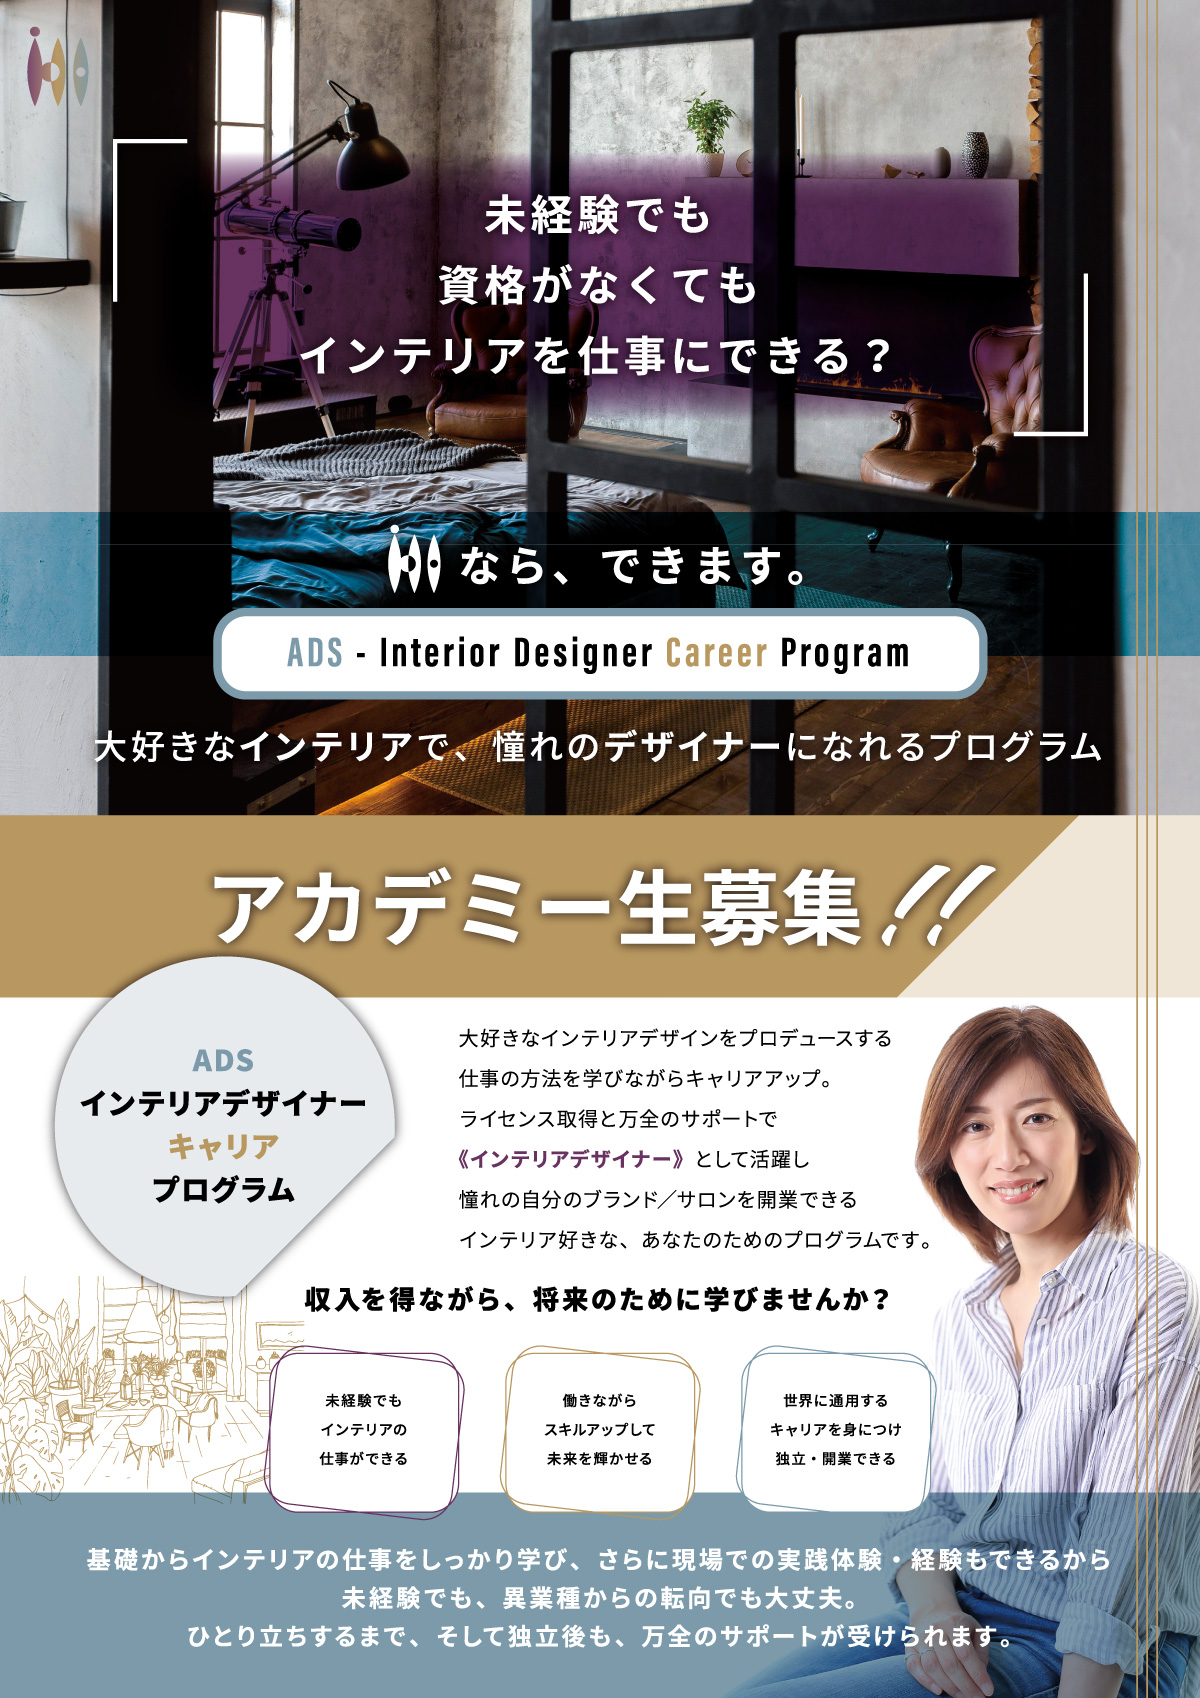 ブランディング Adsデザイン様 新規事業立ち上げ Kabak S カバックス Keiei Brand Design Office